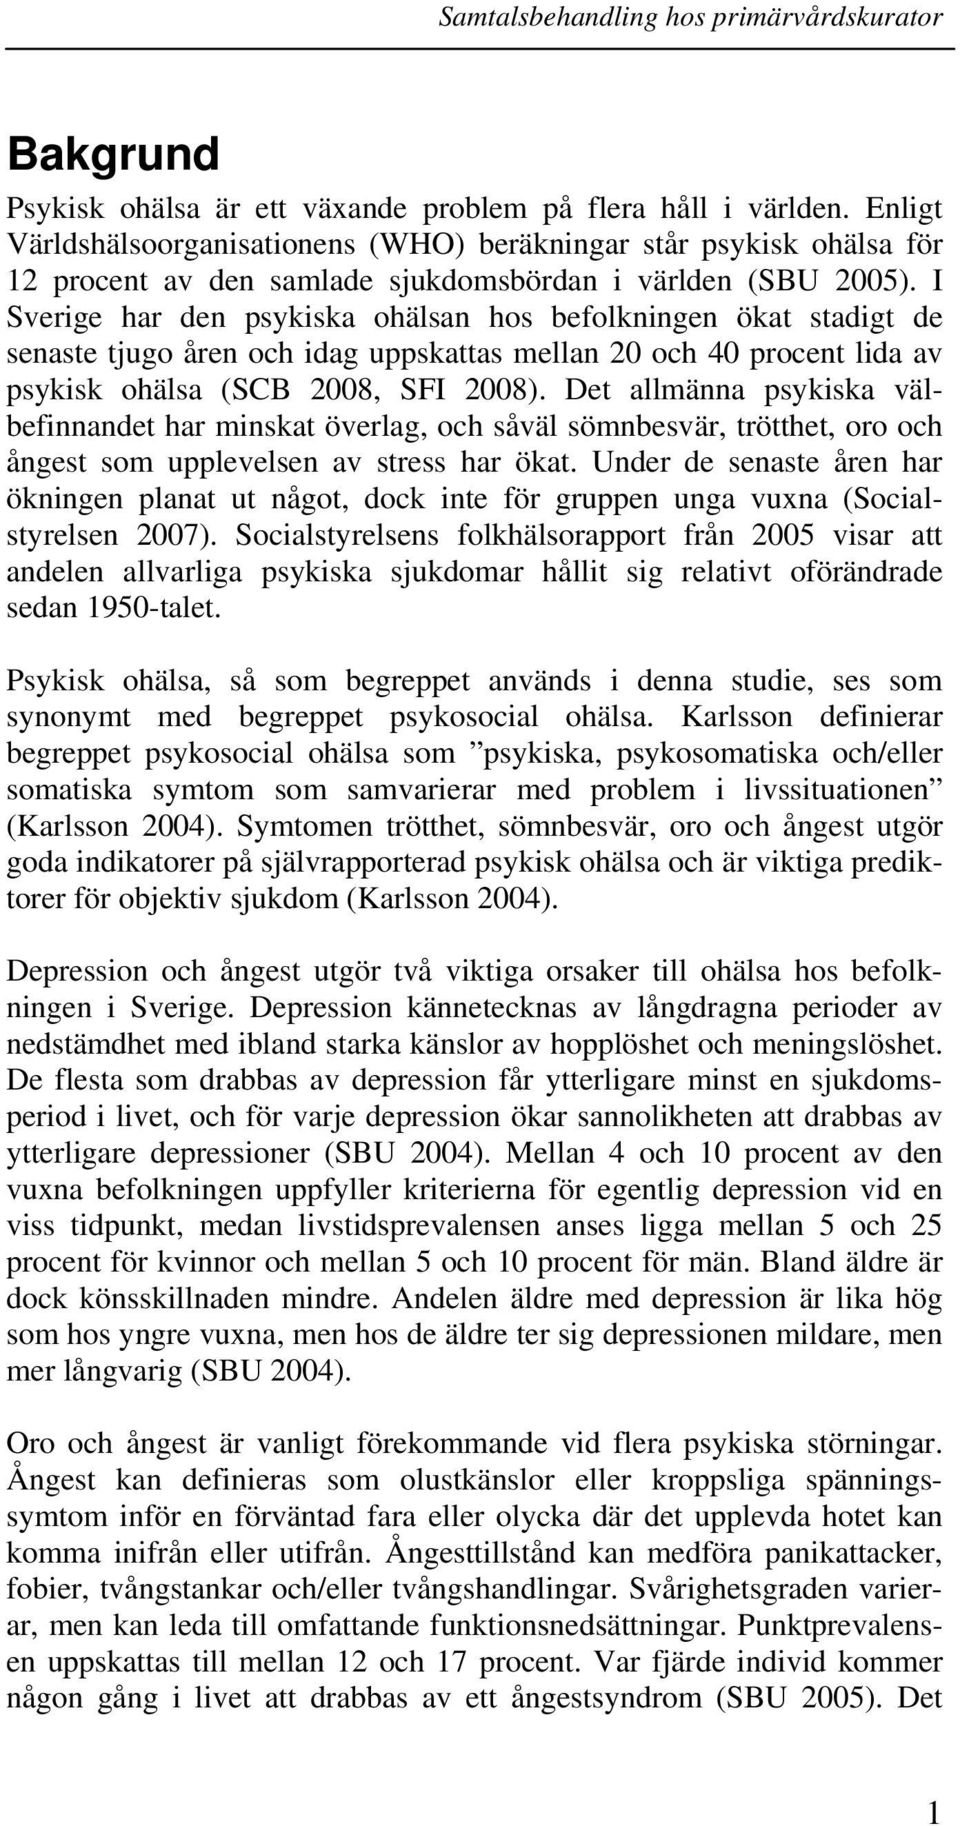 I Sverige har den psykiska ohälsan hos befolkningen ökat stadigt de senaste tjugo åren och idag uppskattas mellan 20 och 40 procent lida av psykisk ohälsa (SCB 2008, SFI 2008).